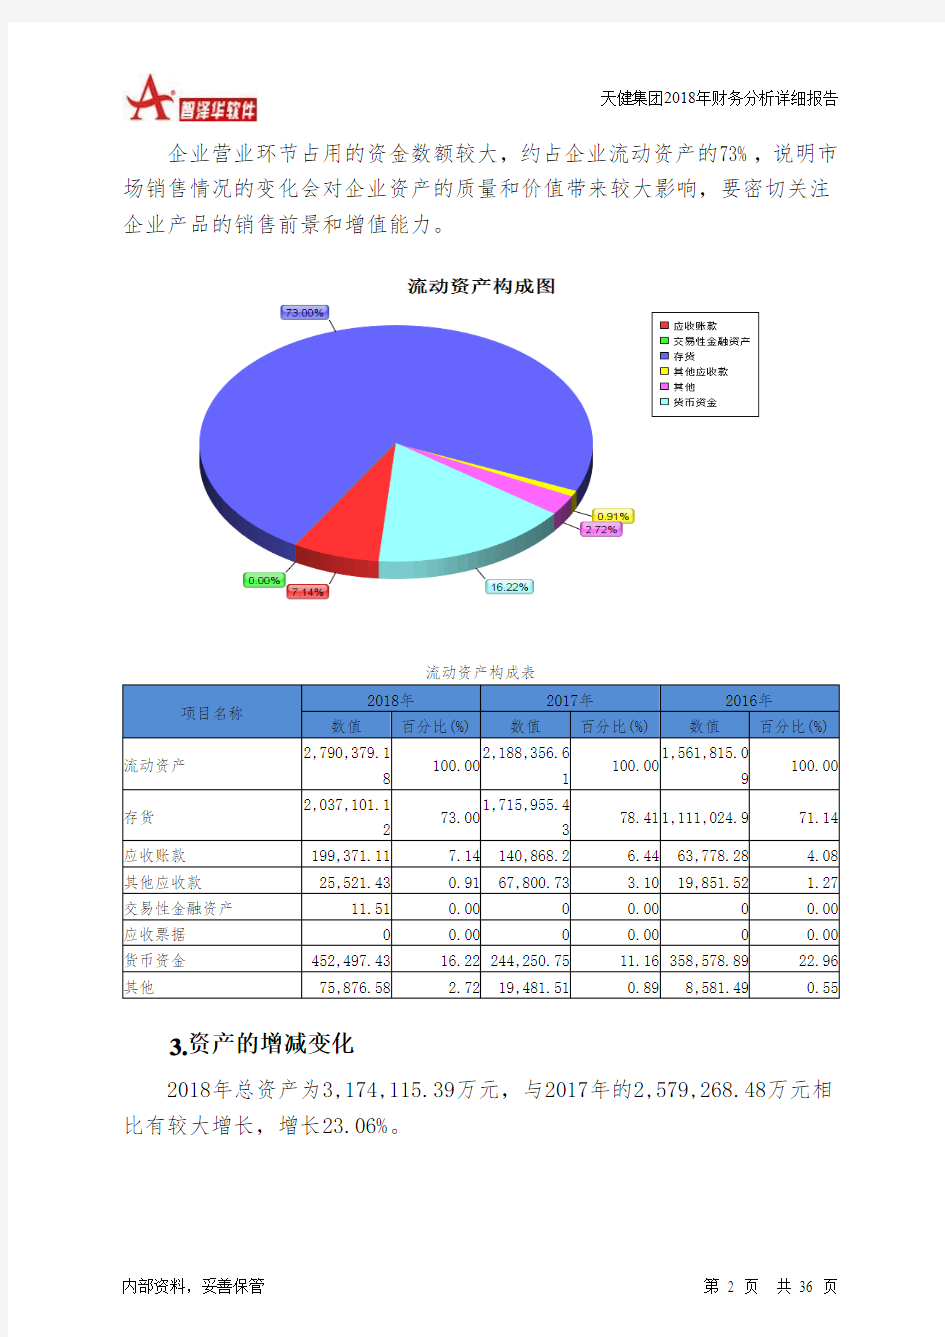 天健集团2018年财务分析详细报告-智泽华